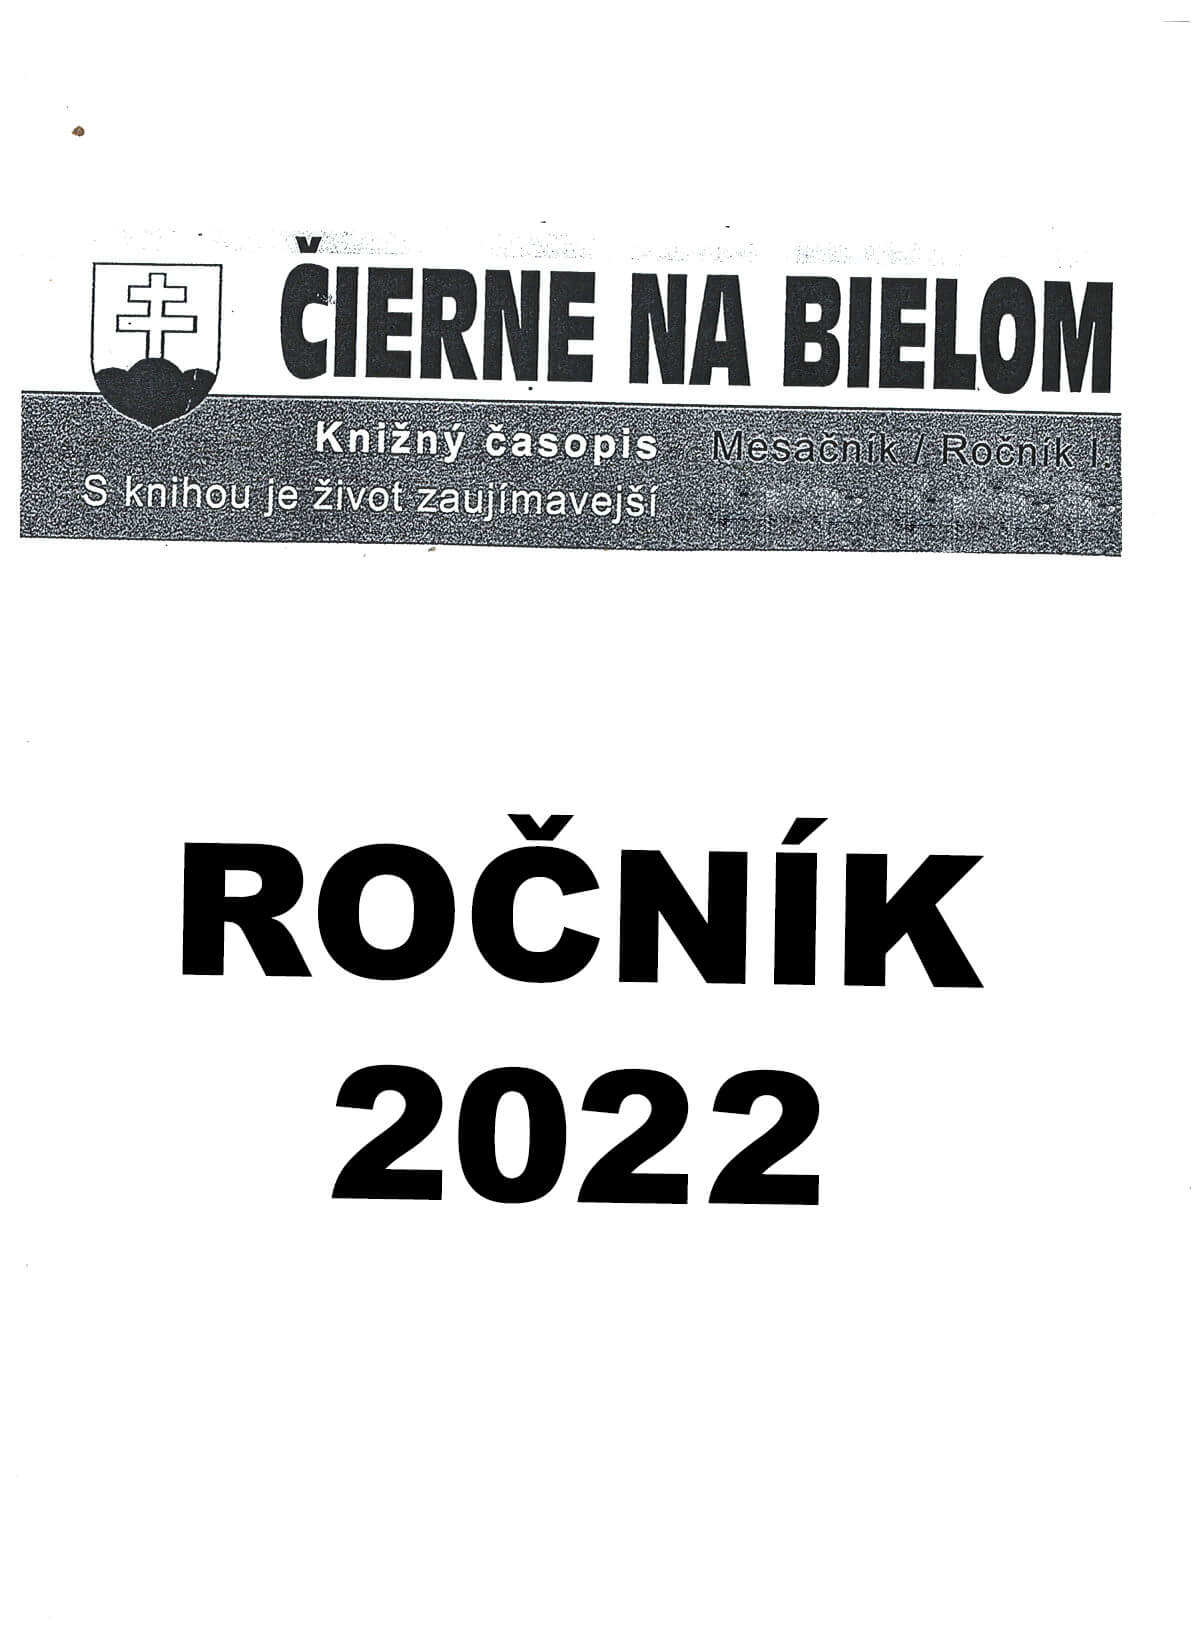 Čierne na bielom  Ročník 2022